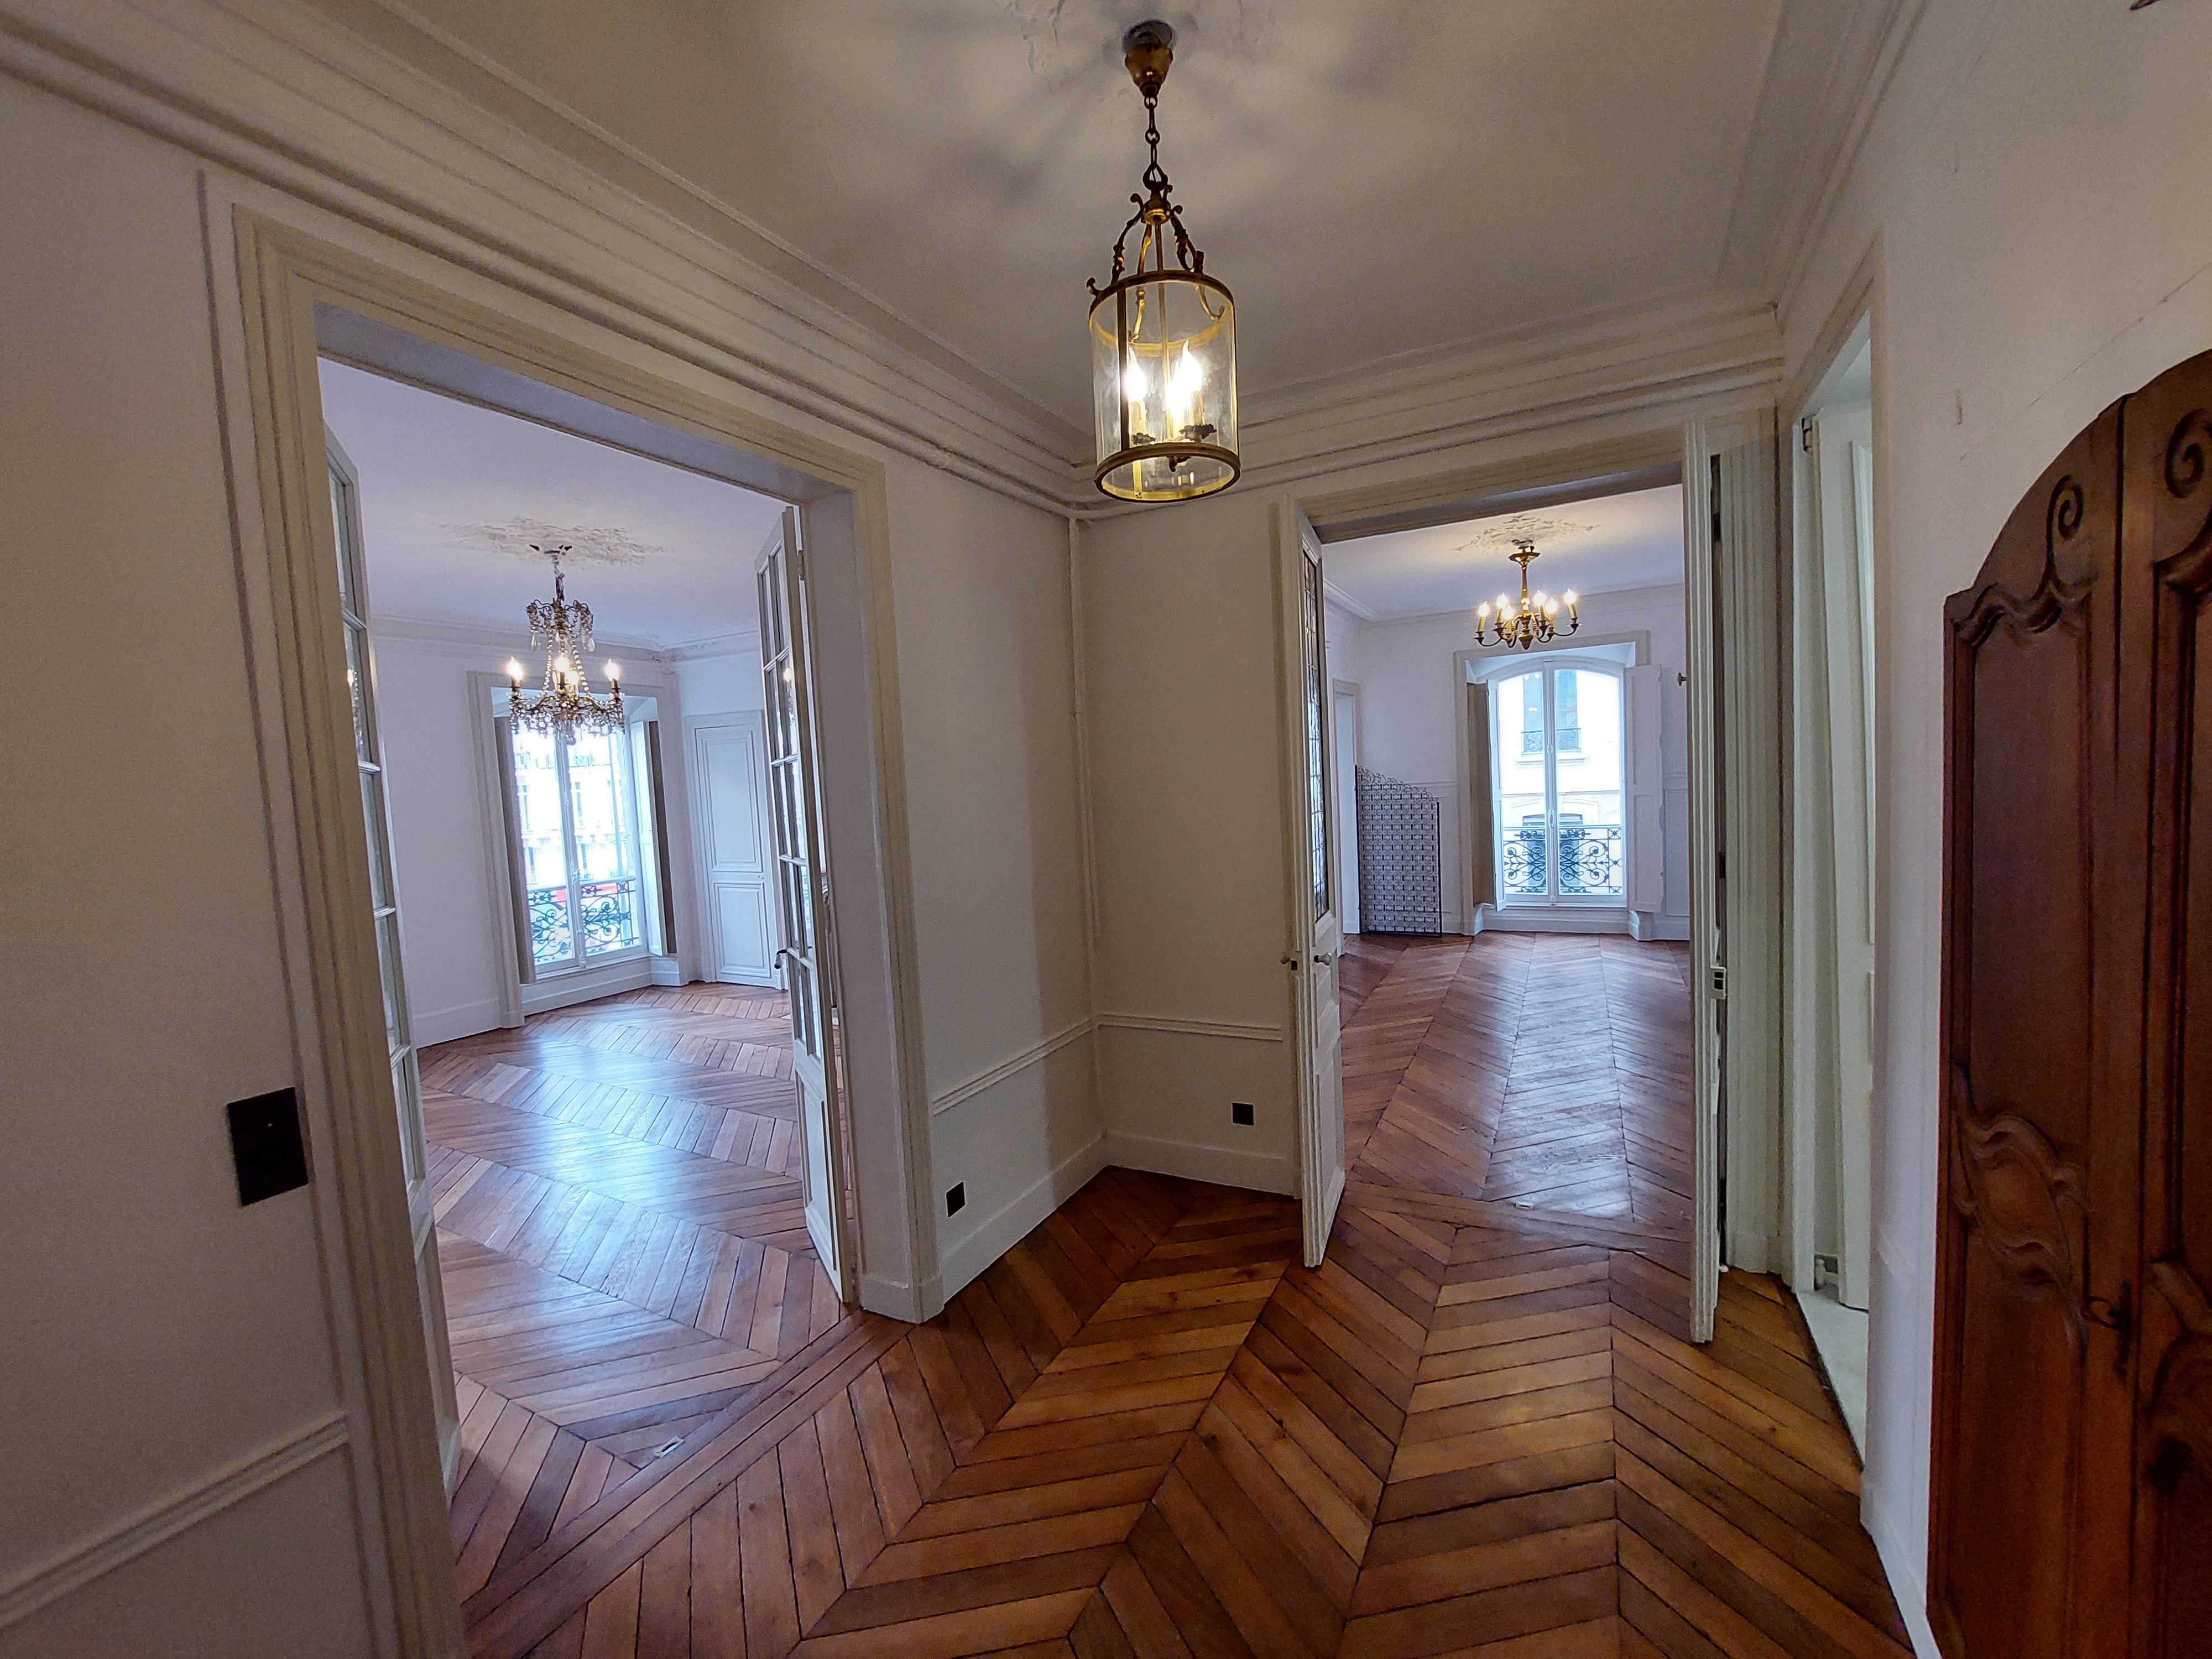 Image Sale apartment 10 rooms 221 m² Paris 6E (75006) 3.990.000 € 2